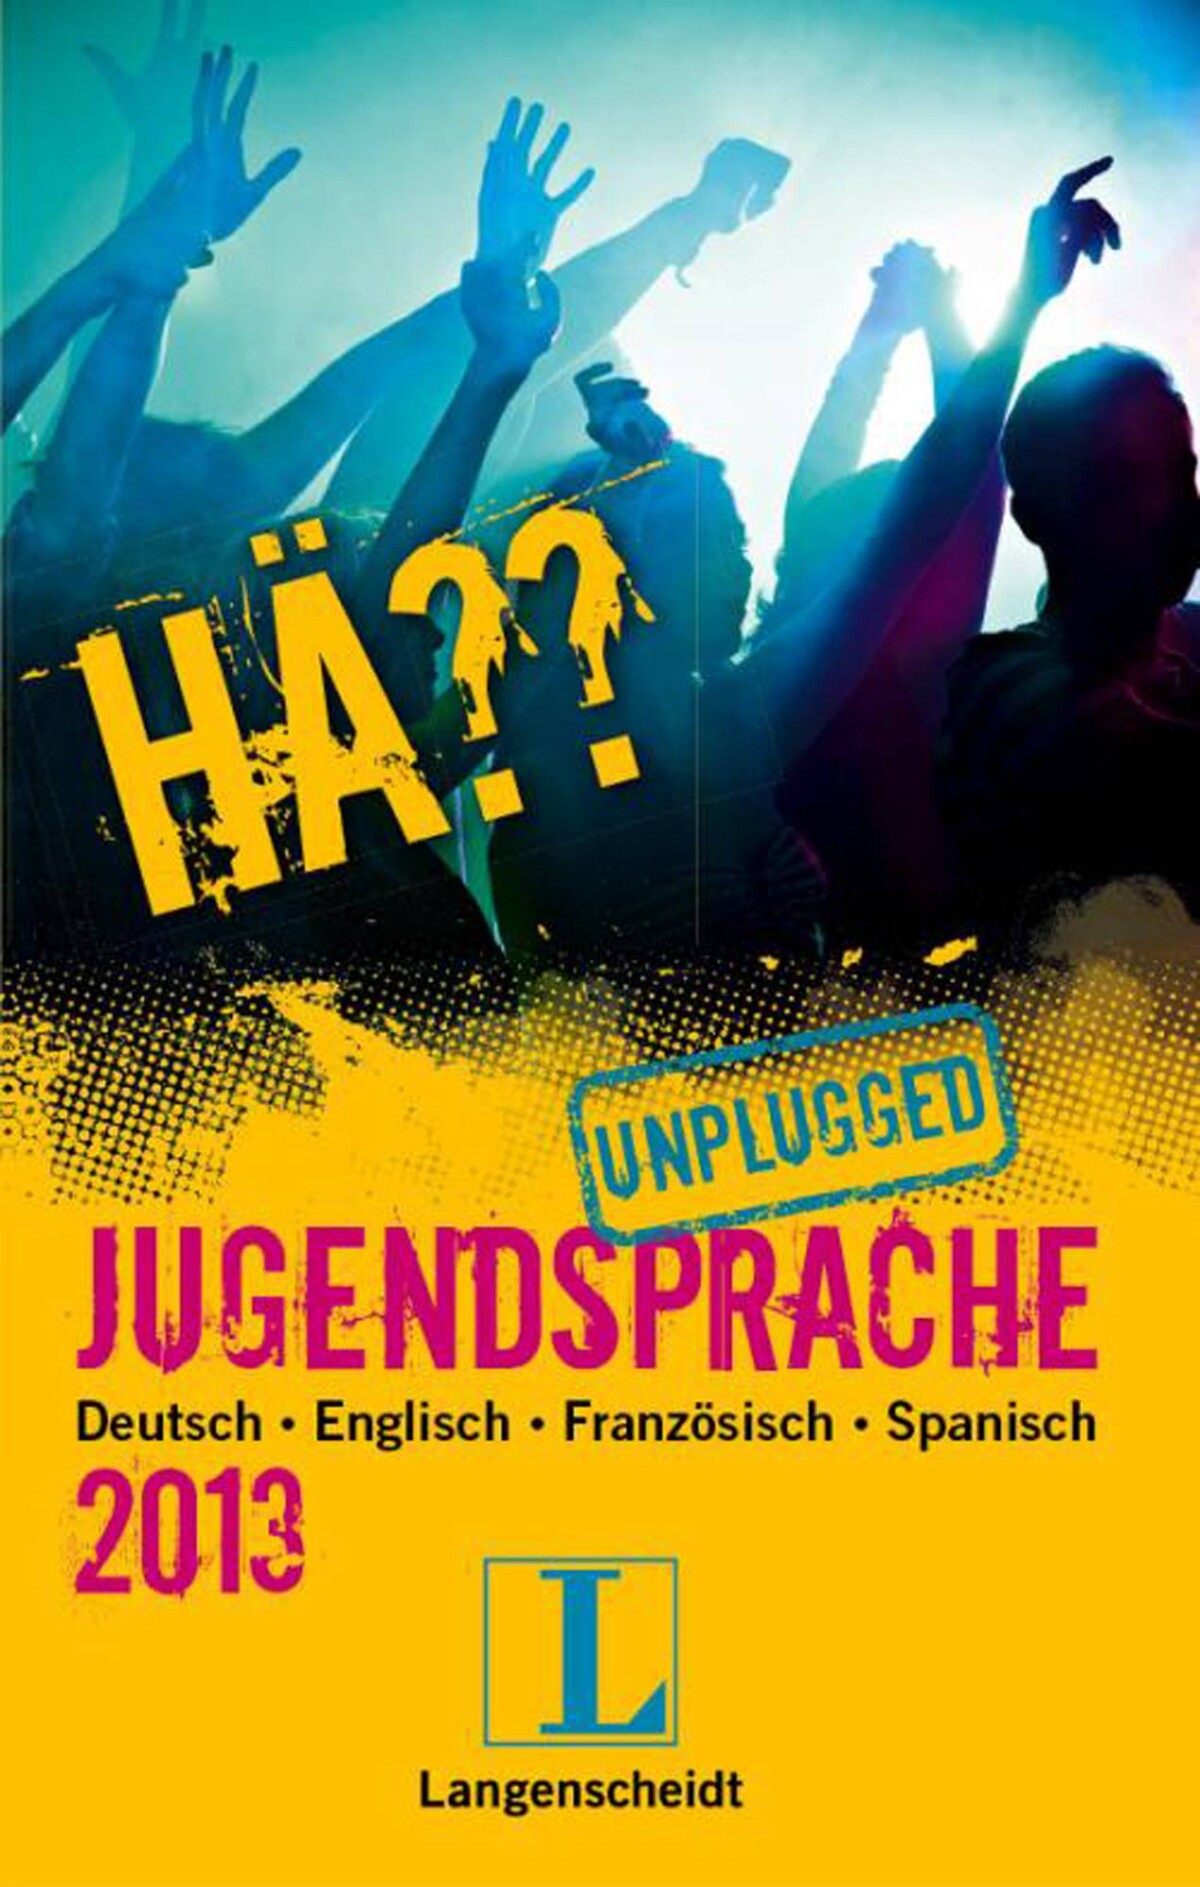 h-h-jugendsprache-unplugged-2011-von-langenscheidt-die-blaue-seite